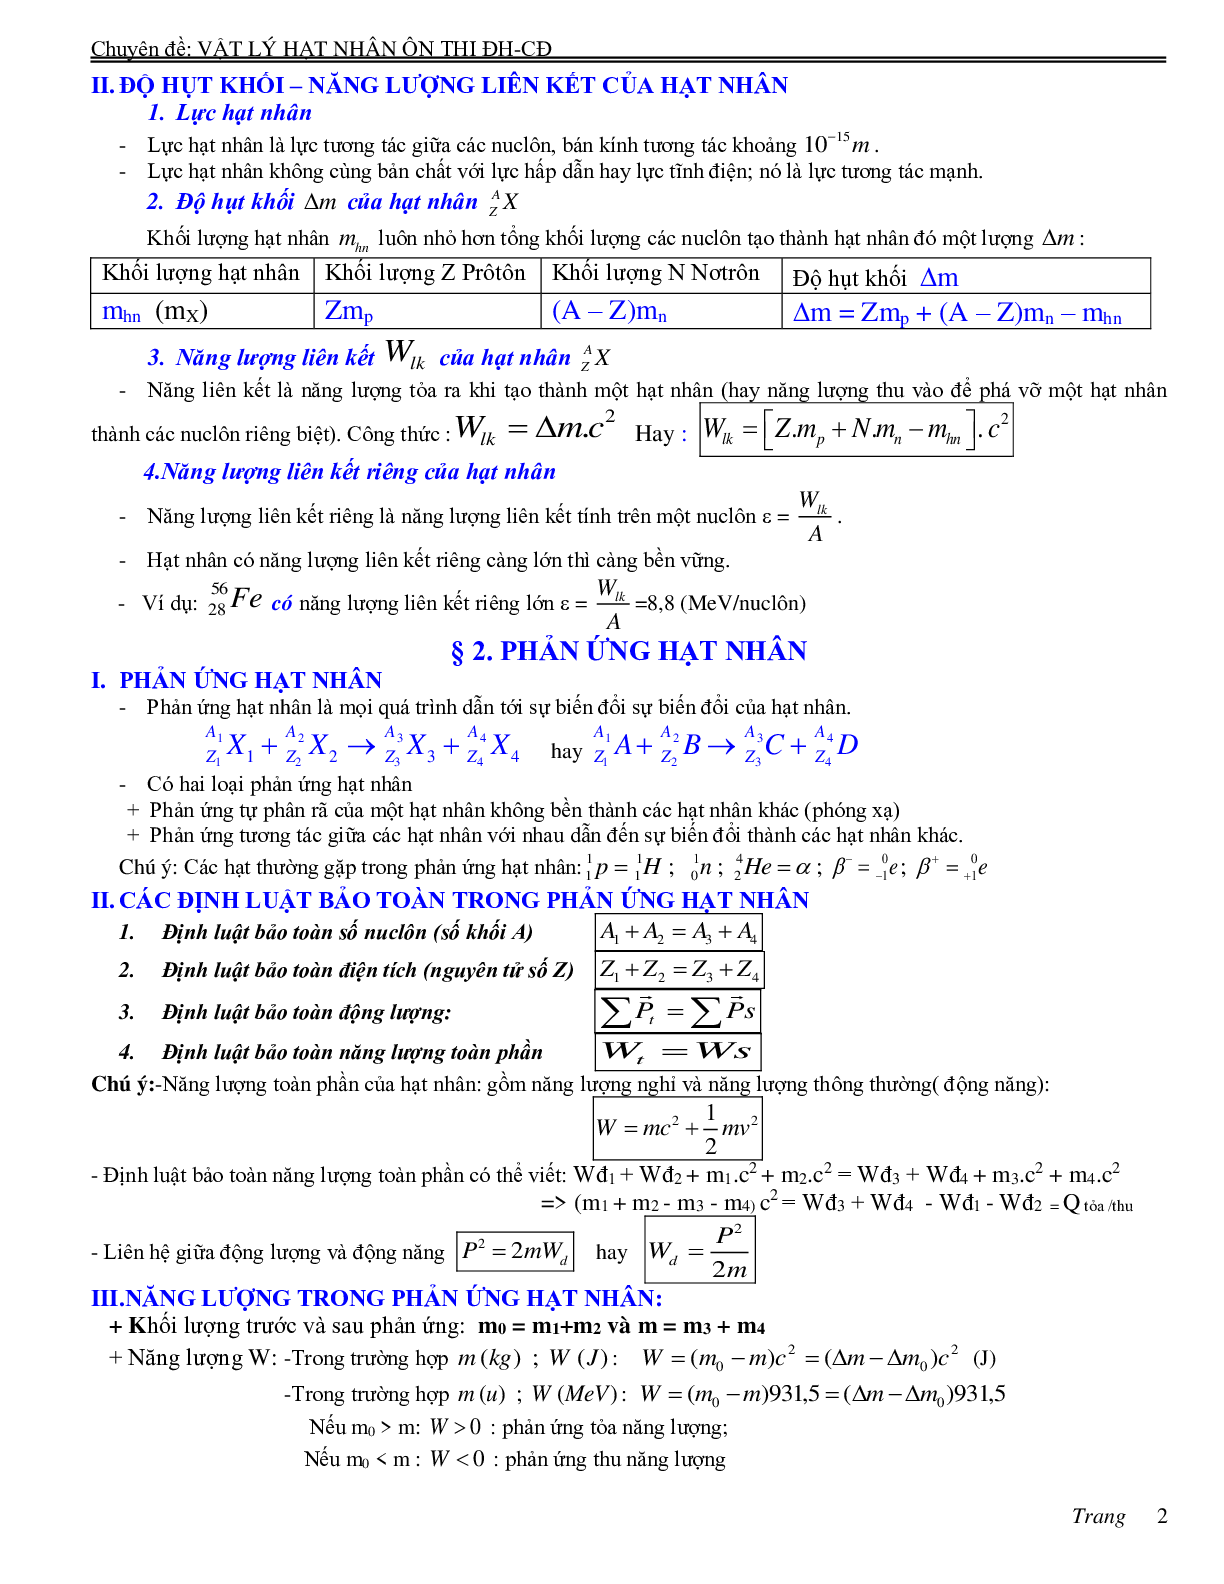 Chuyên đề Hạt nhân nguyên tử môn Vật lý lớp 12 (trang 2)